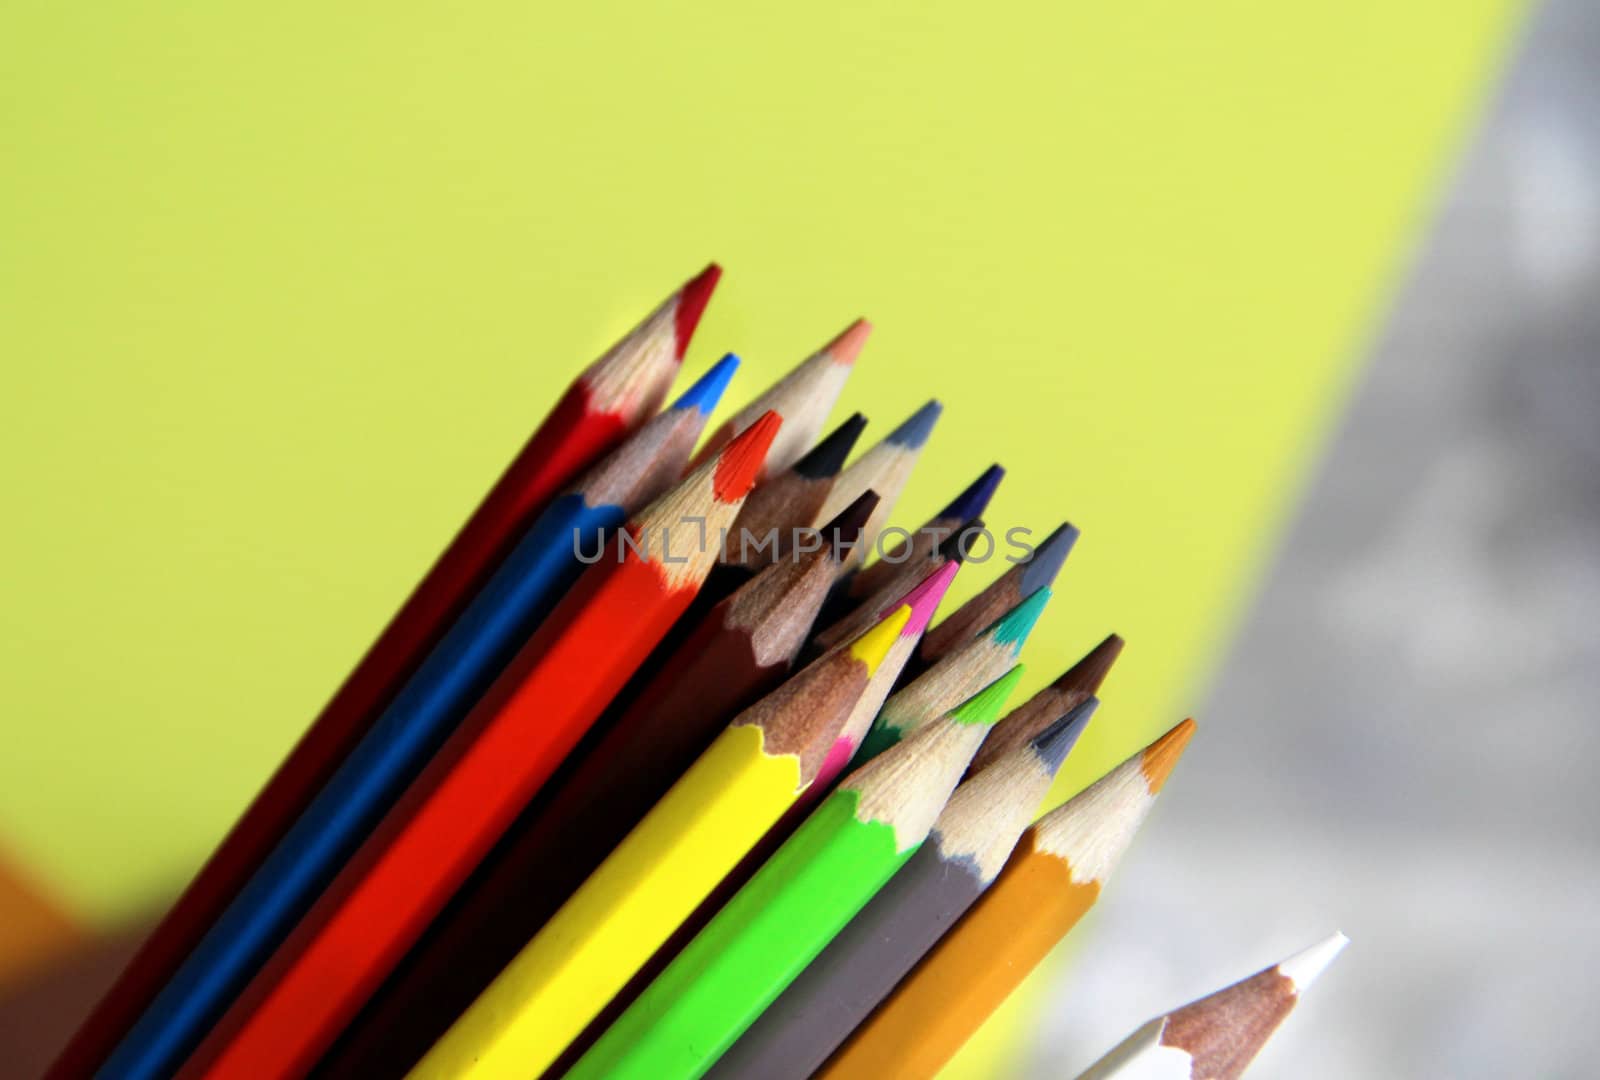 Multicolored pencils by tanouchka